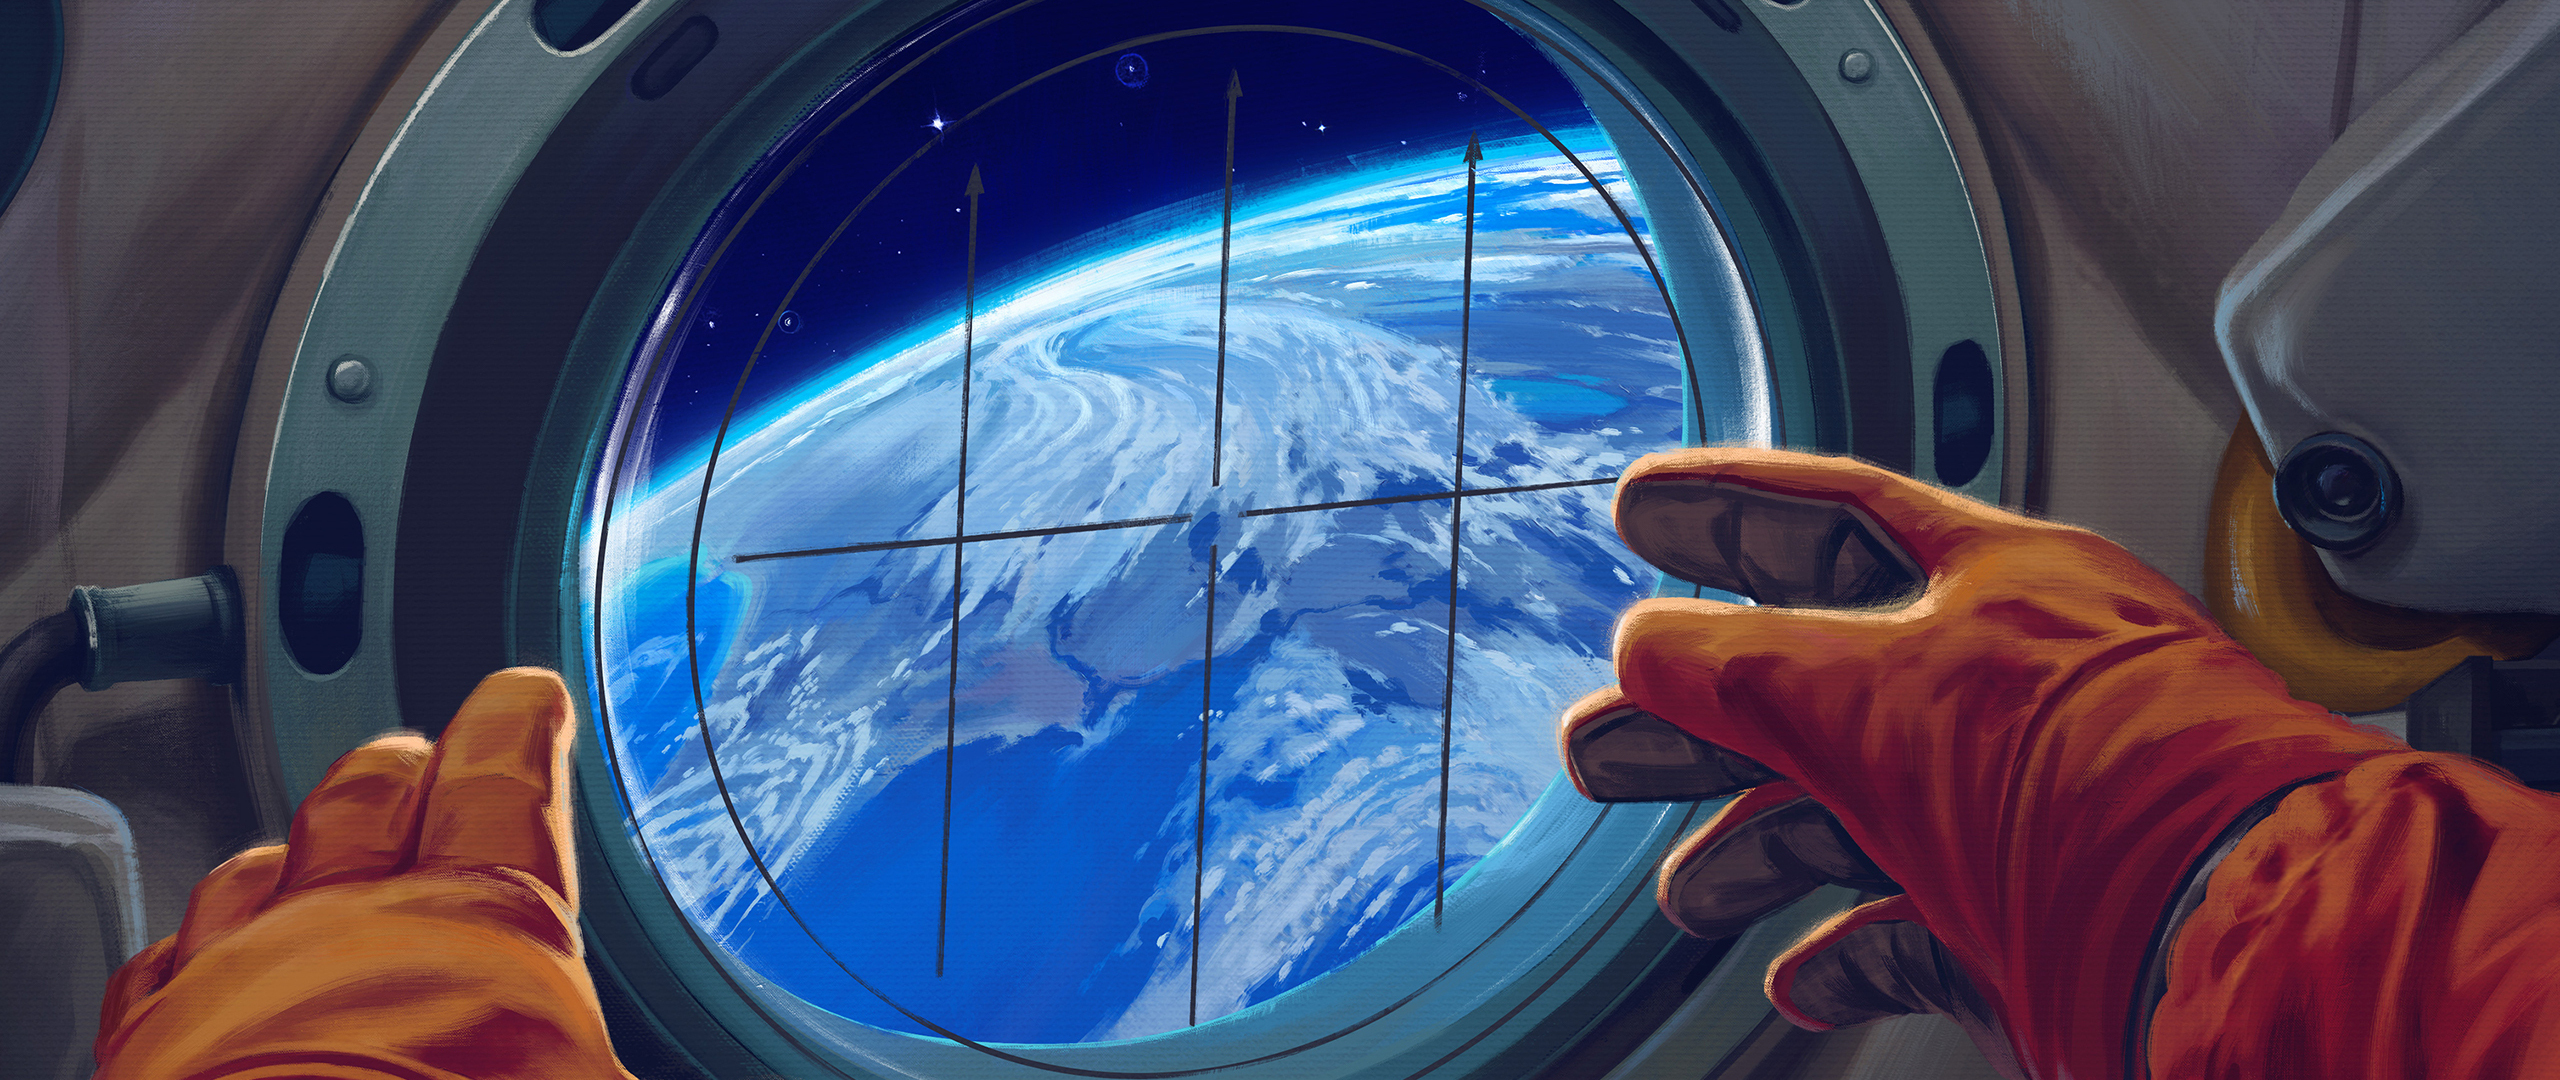 Spacecraft window, astronaut, 2560x1080 wallpaper